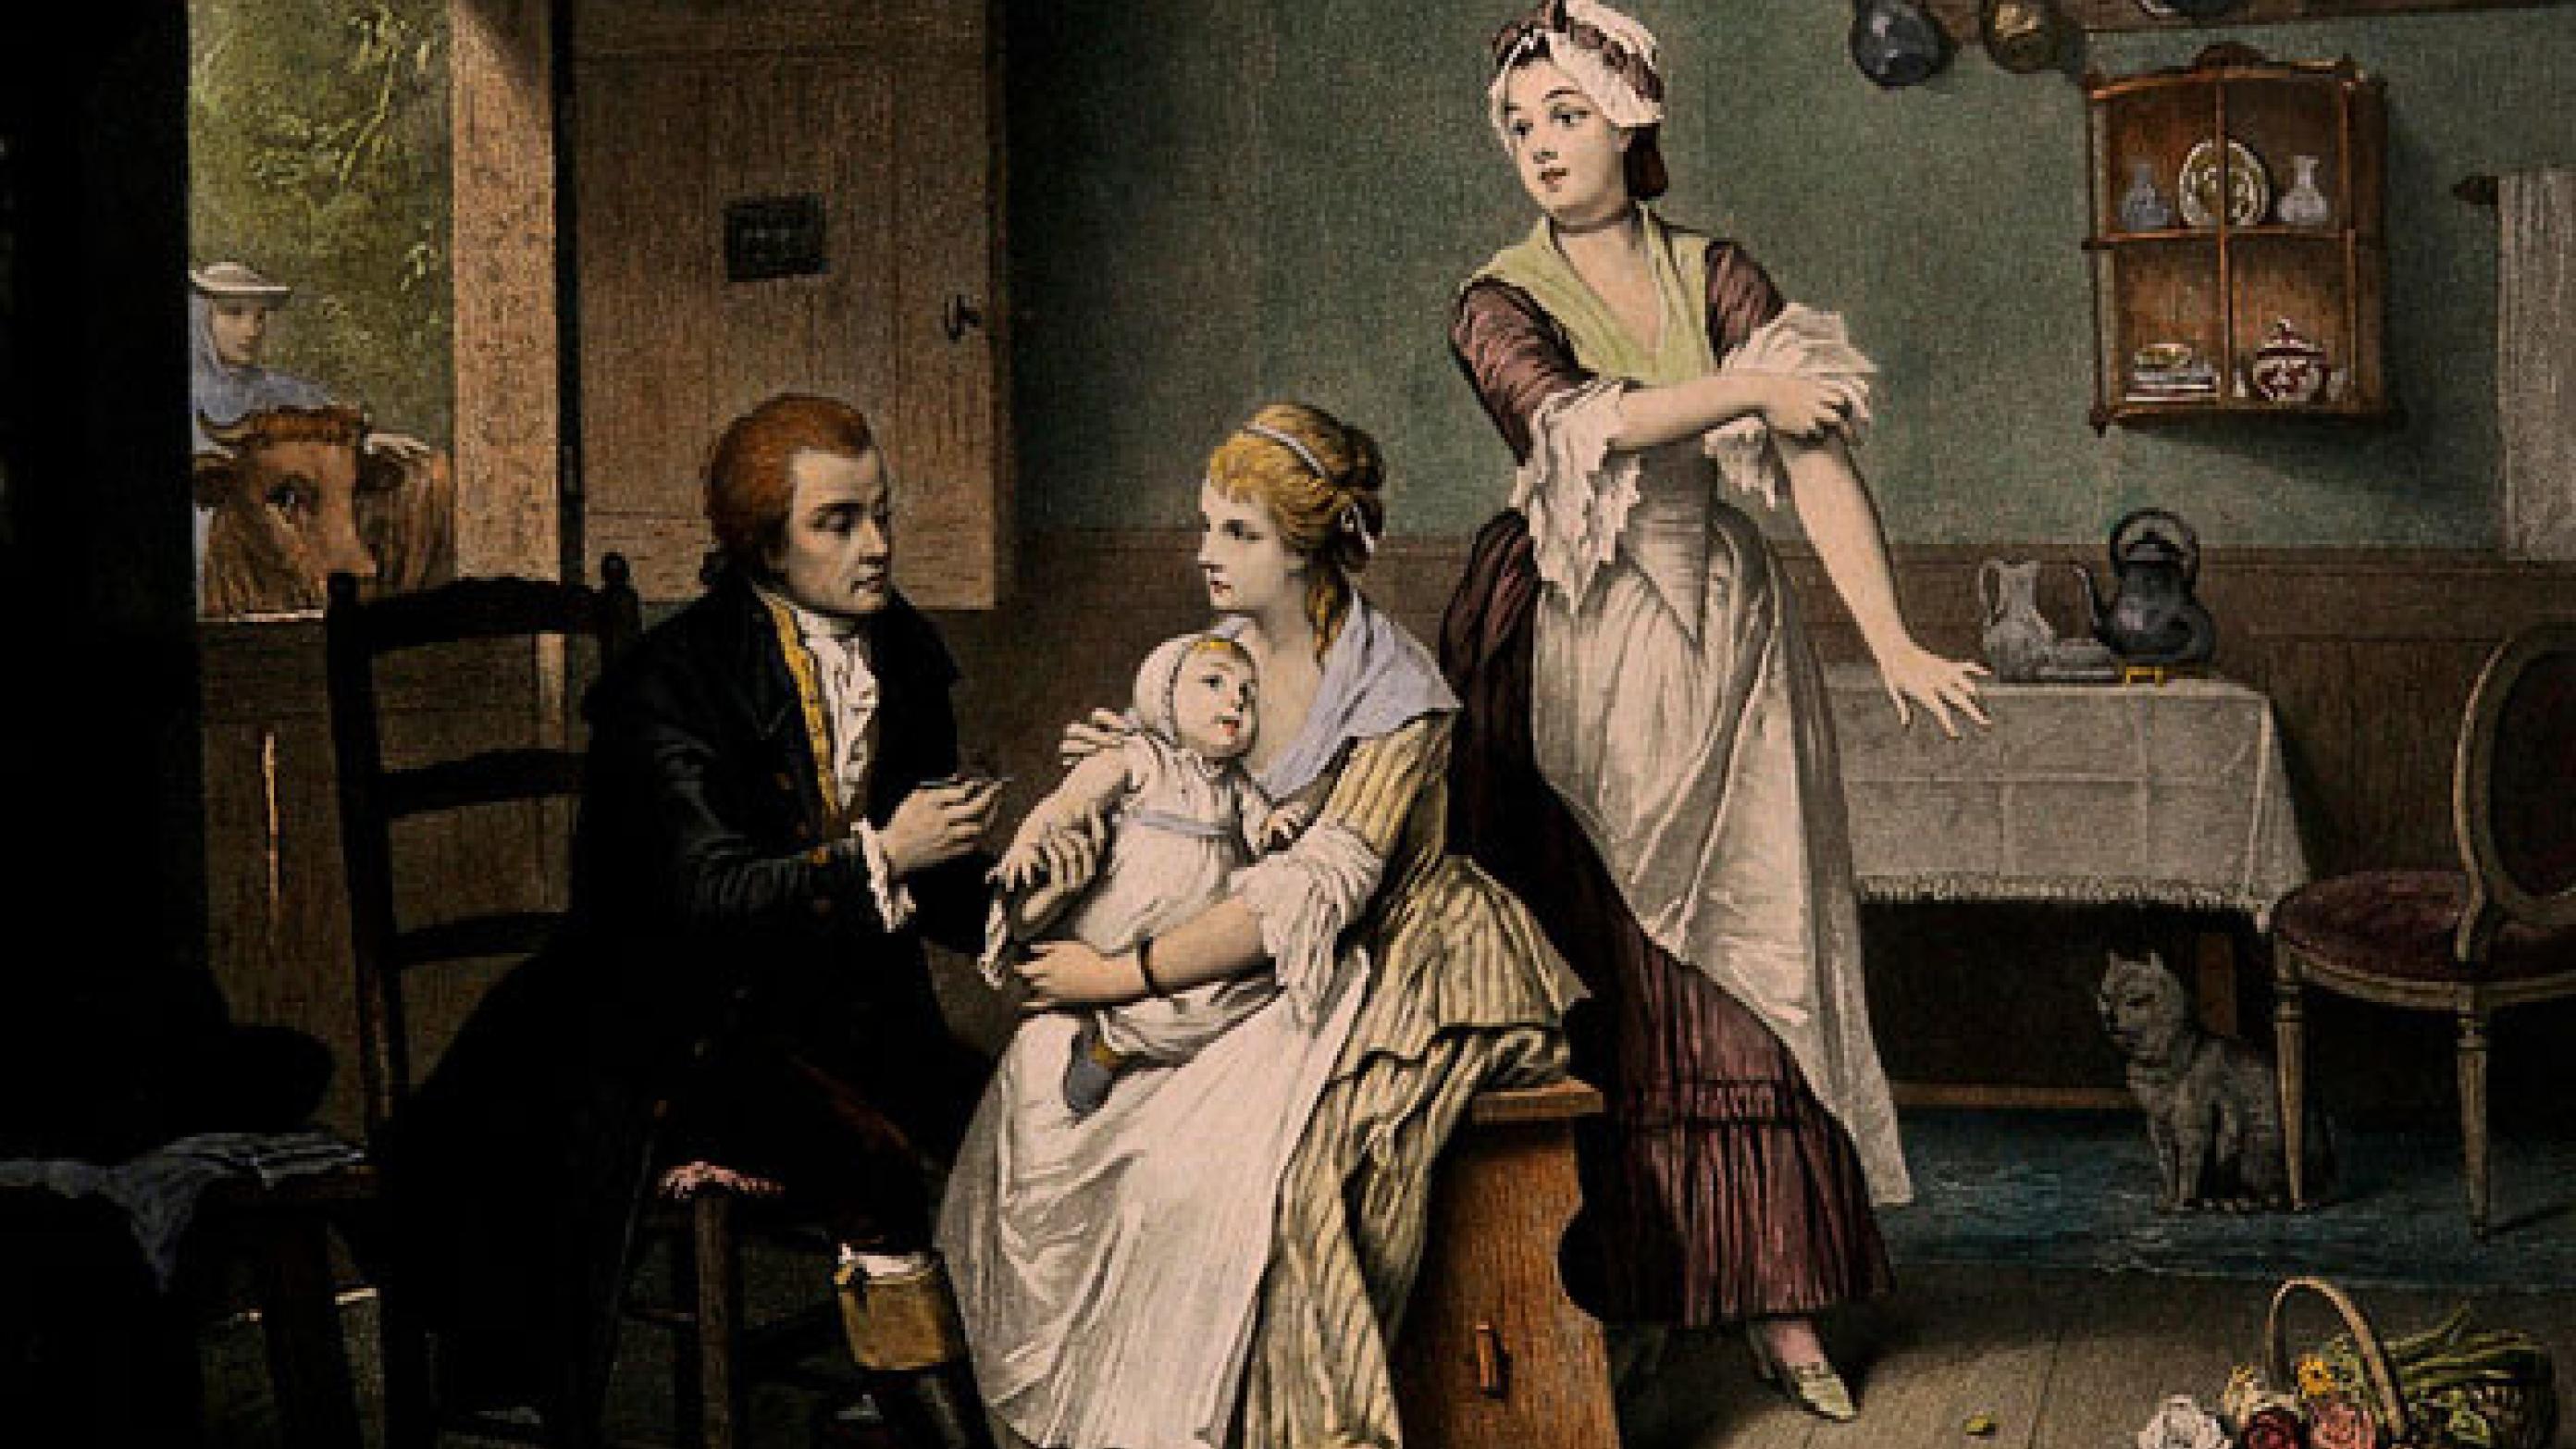 Edward Jenner, k vaccinerer sin søn, mens hans kone holder ham, og tjenestepigen ruller ærmerne op. Farvelagt radering, 1800-tallet. The Wellcome Collection.